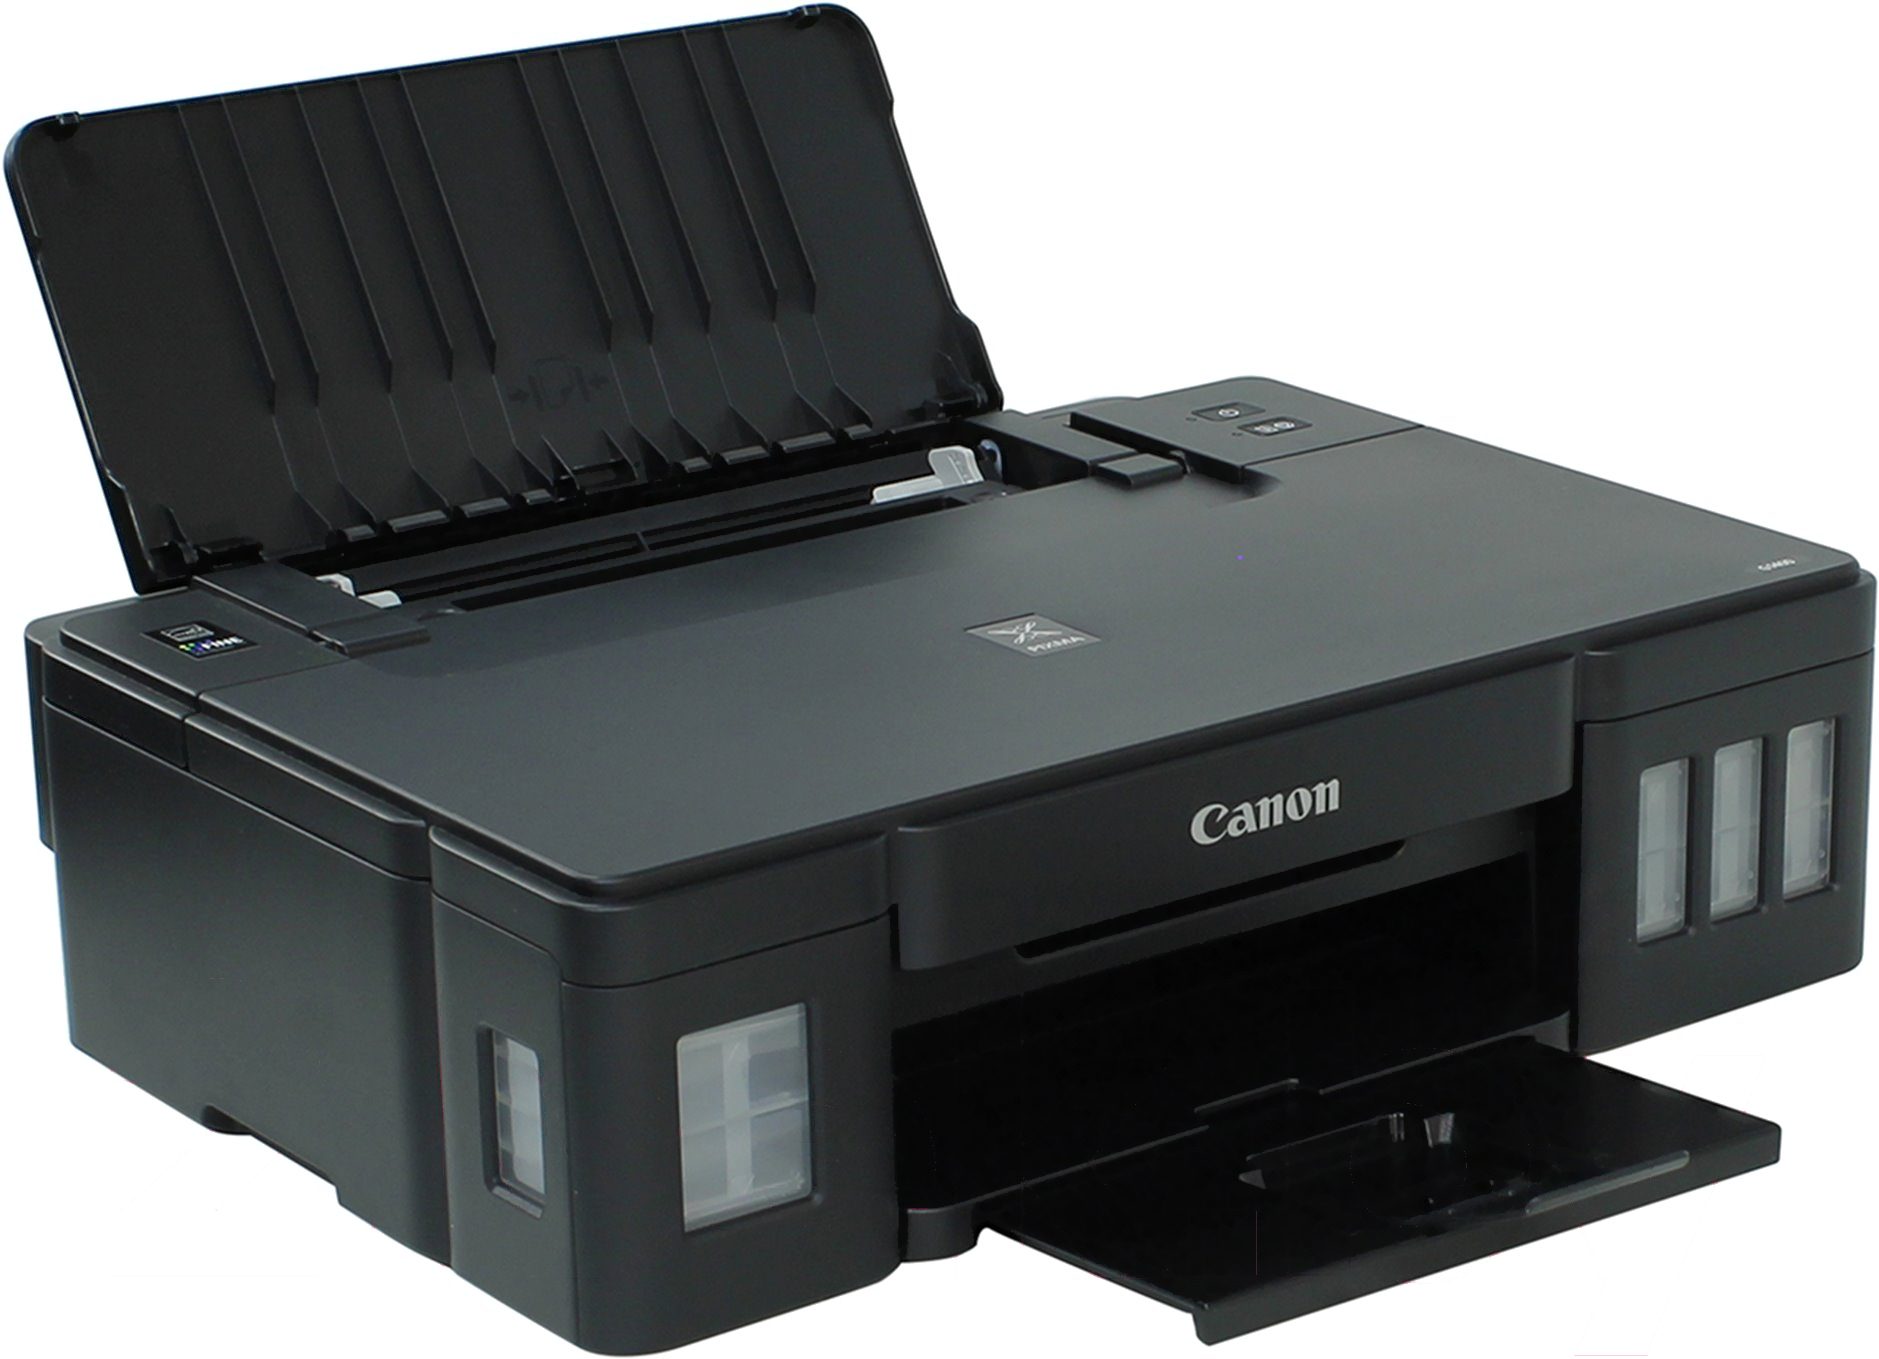 Принтер Canon PIXMA g1400. Кэнон 1400 принтер. Принтер Canon PIXMA g1410. Canon PIXMA 1400.